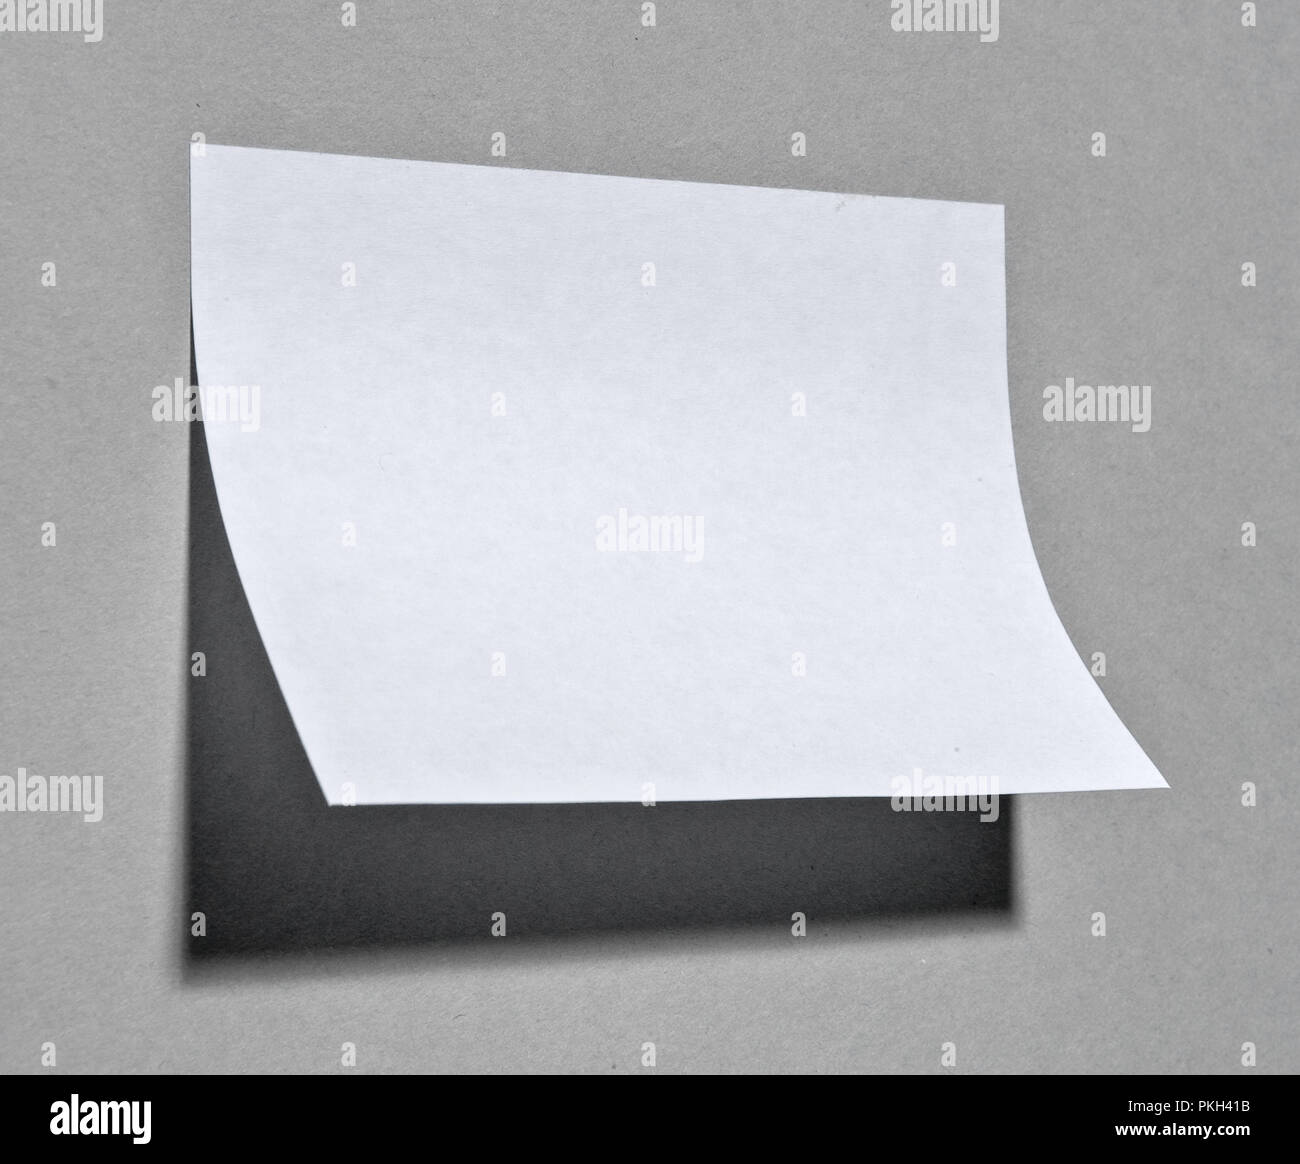 Ein Papier beachten Sie kleben an der Wand mit Schatten Stockfotografie -  Alamy